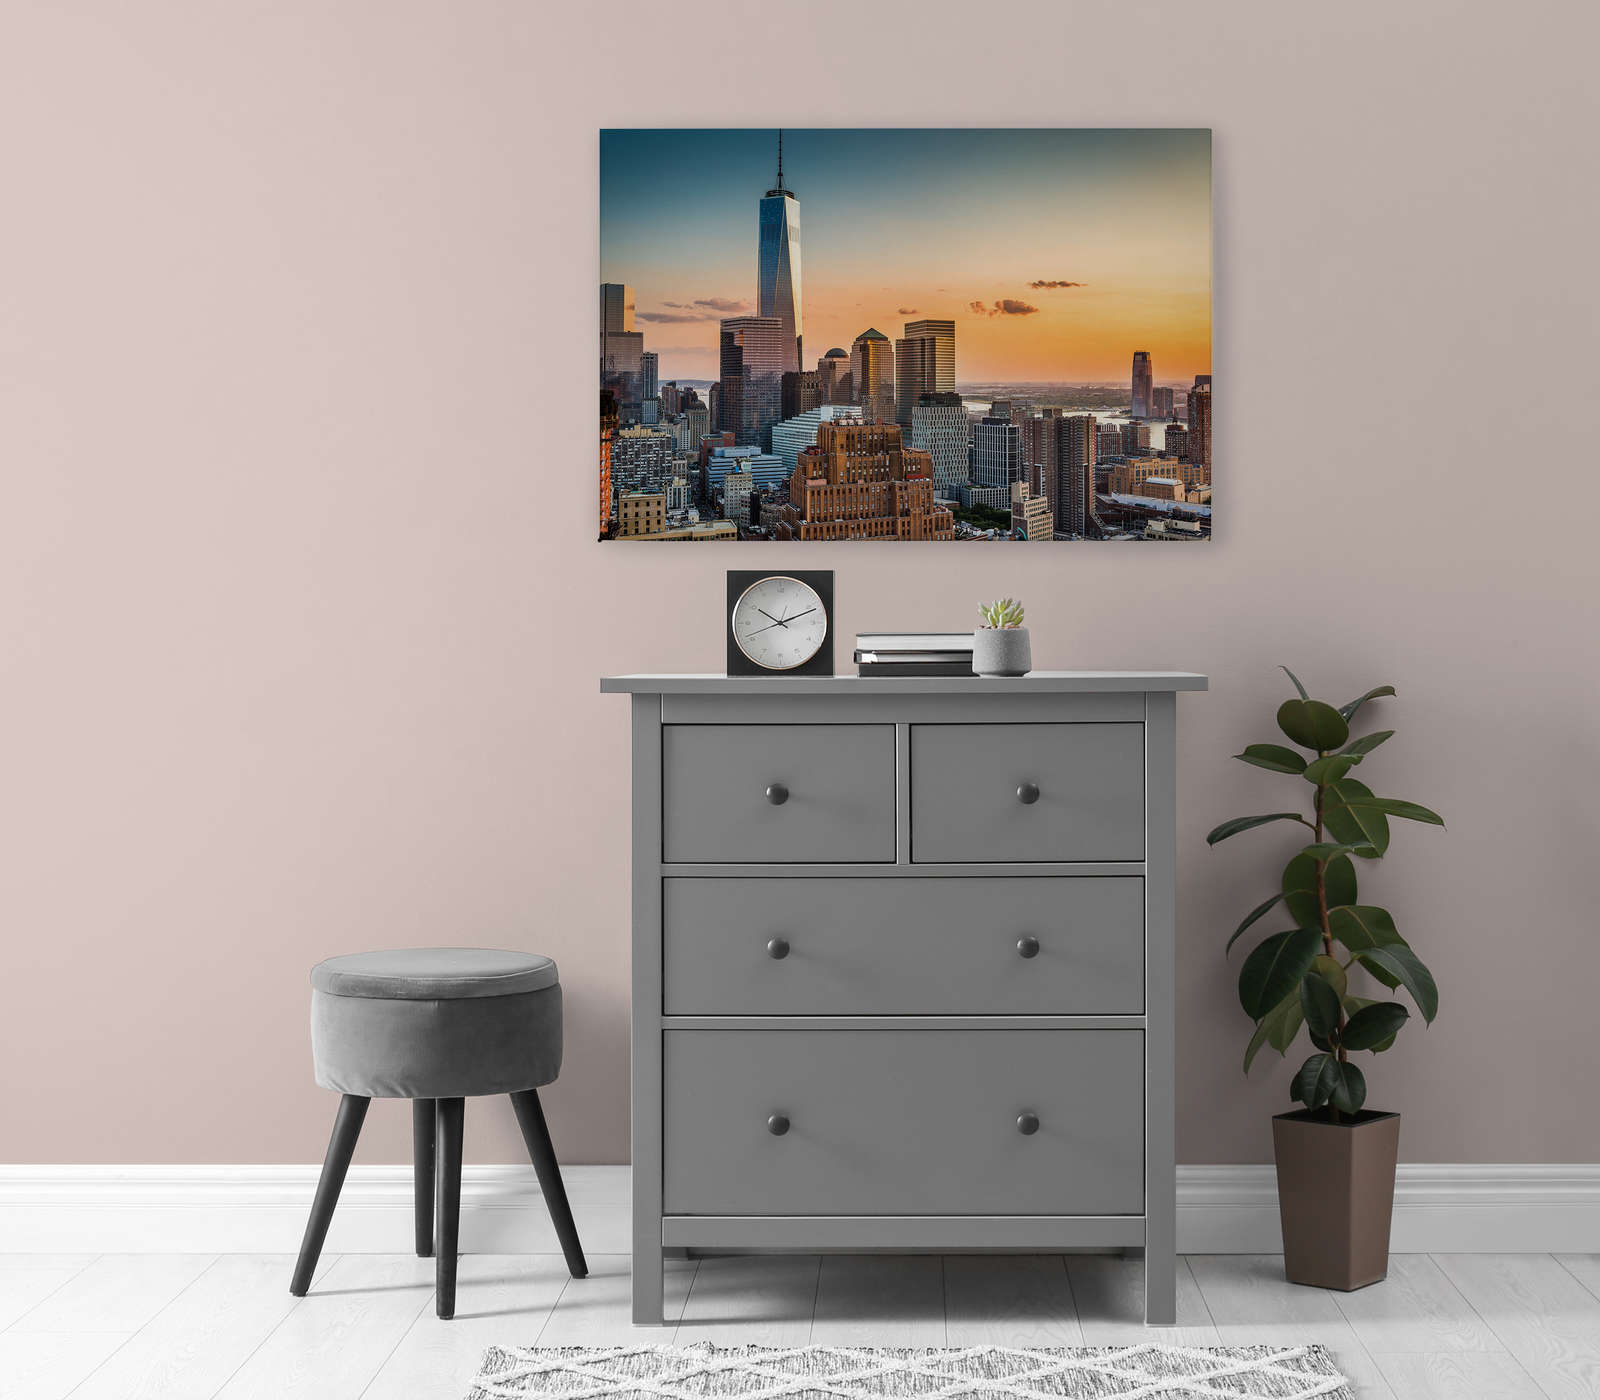             Canvas schilderij met Manhattan skyline bij zonsondergang - 0.90 m x 0.60 m
        